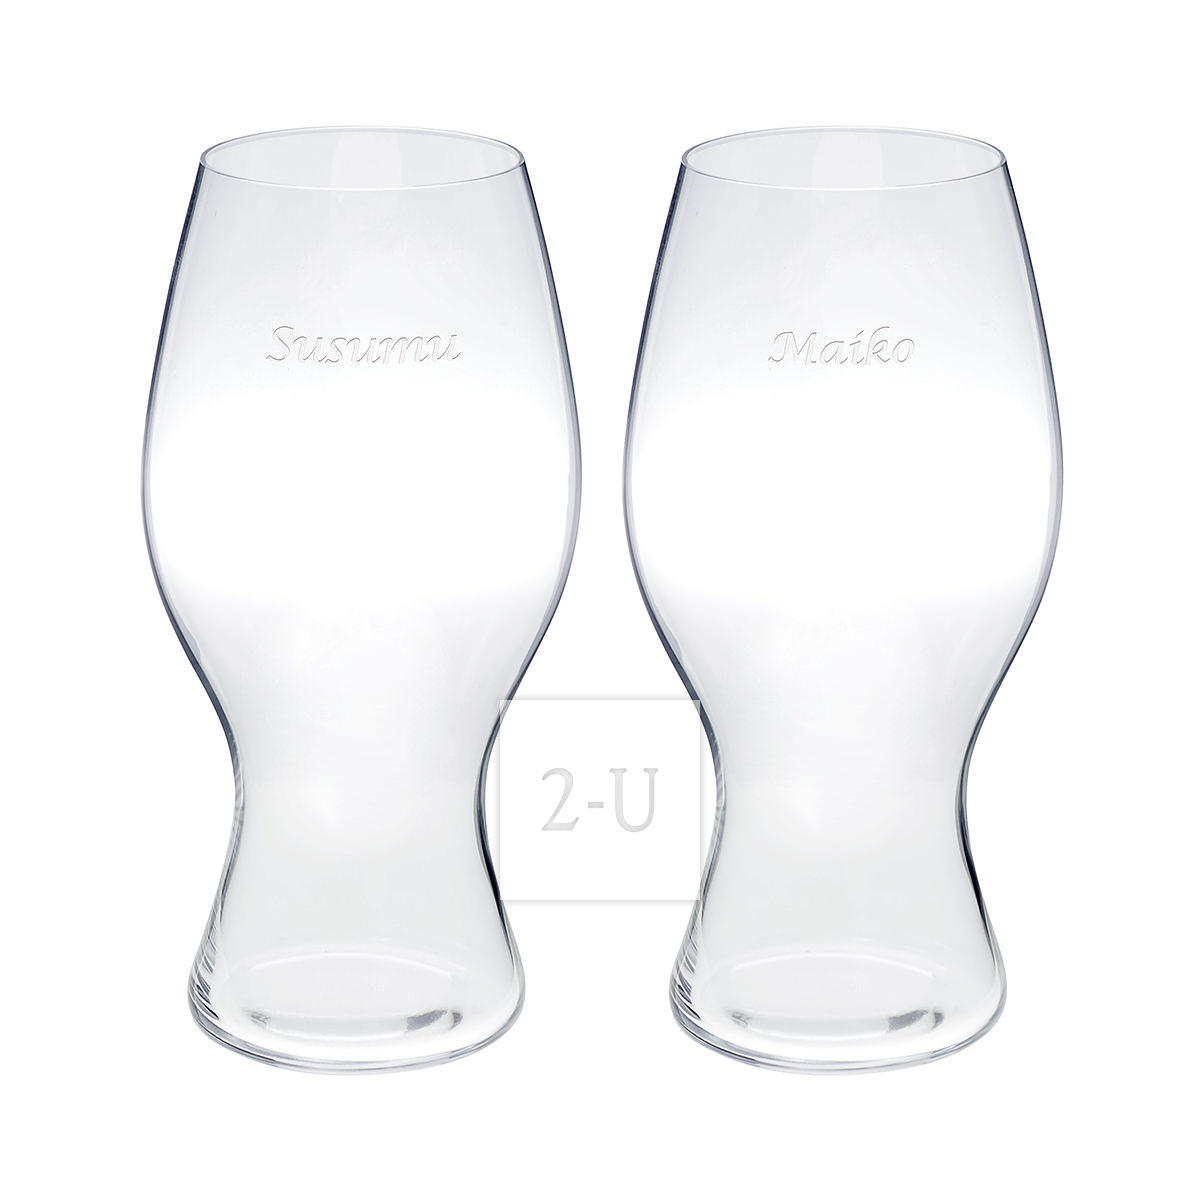 奧地利力多可口可樂係列 Riedel  COCA-COLA 水晶玻璃酒杯可樂杯對杯